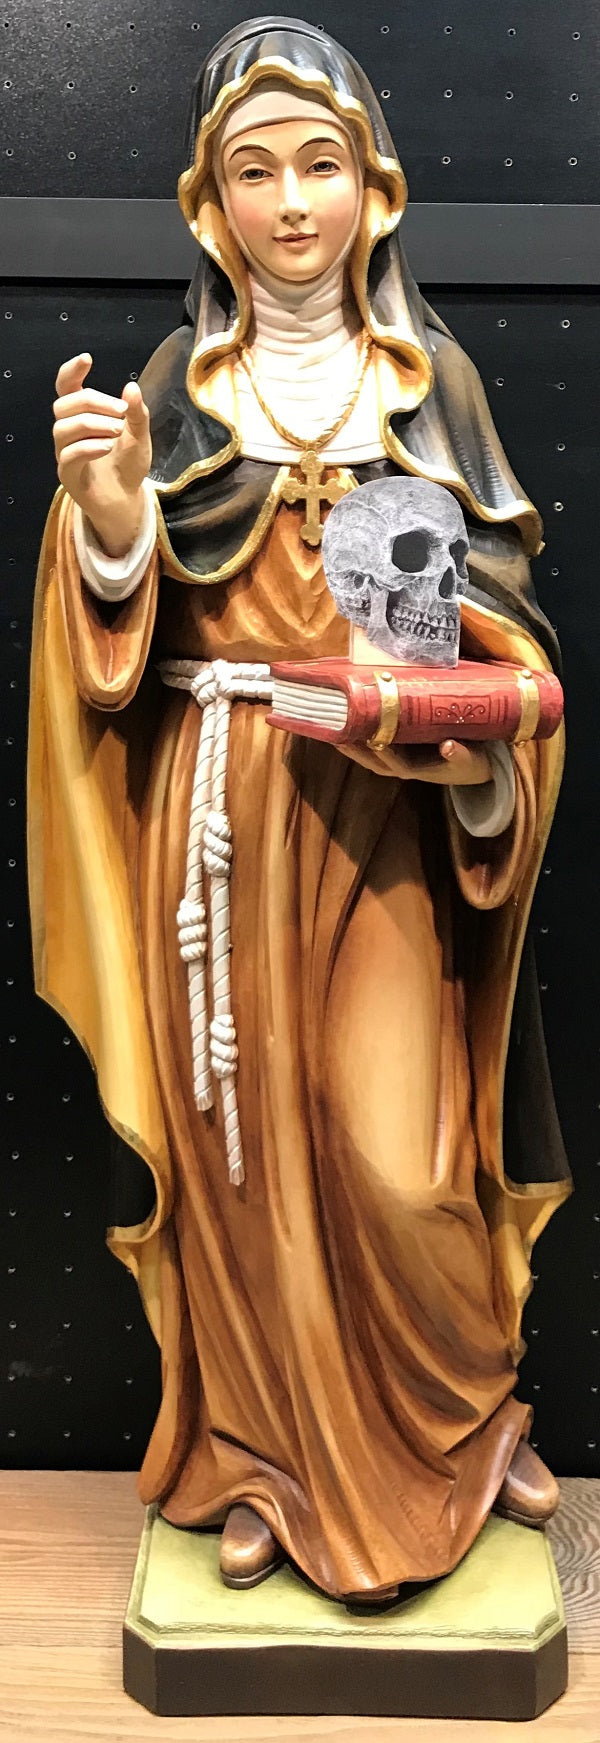 St Saint Rosalia with Skull Figurine Statue